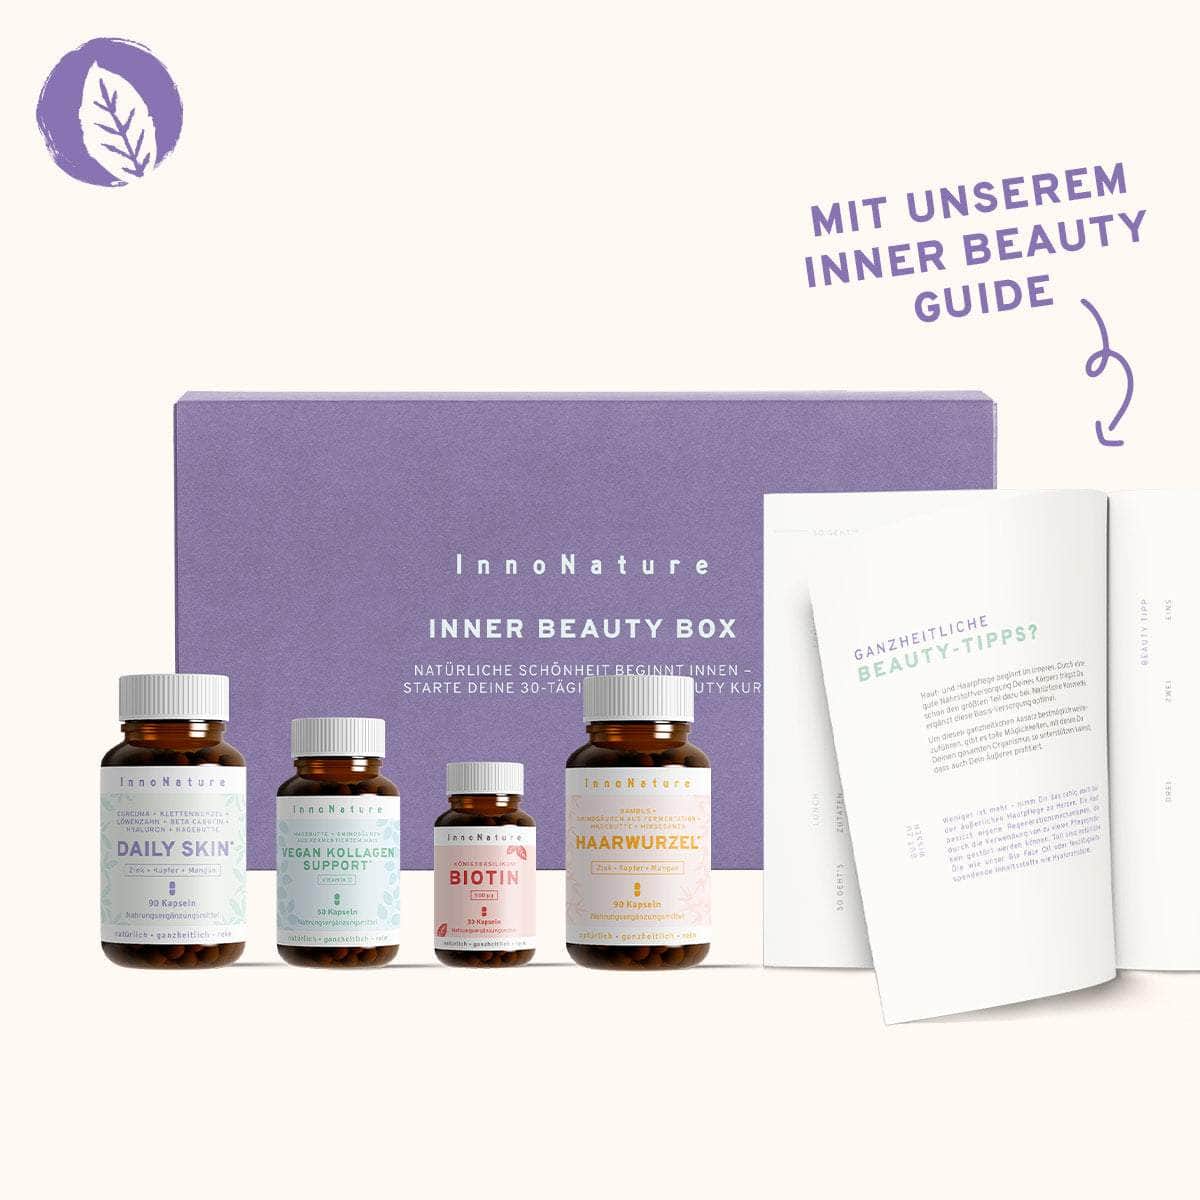 InnoNature Pakete Inner Beauty Box: Die Monatskur für Deine natürliche Schönheit von Innen